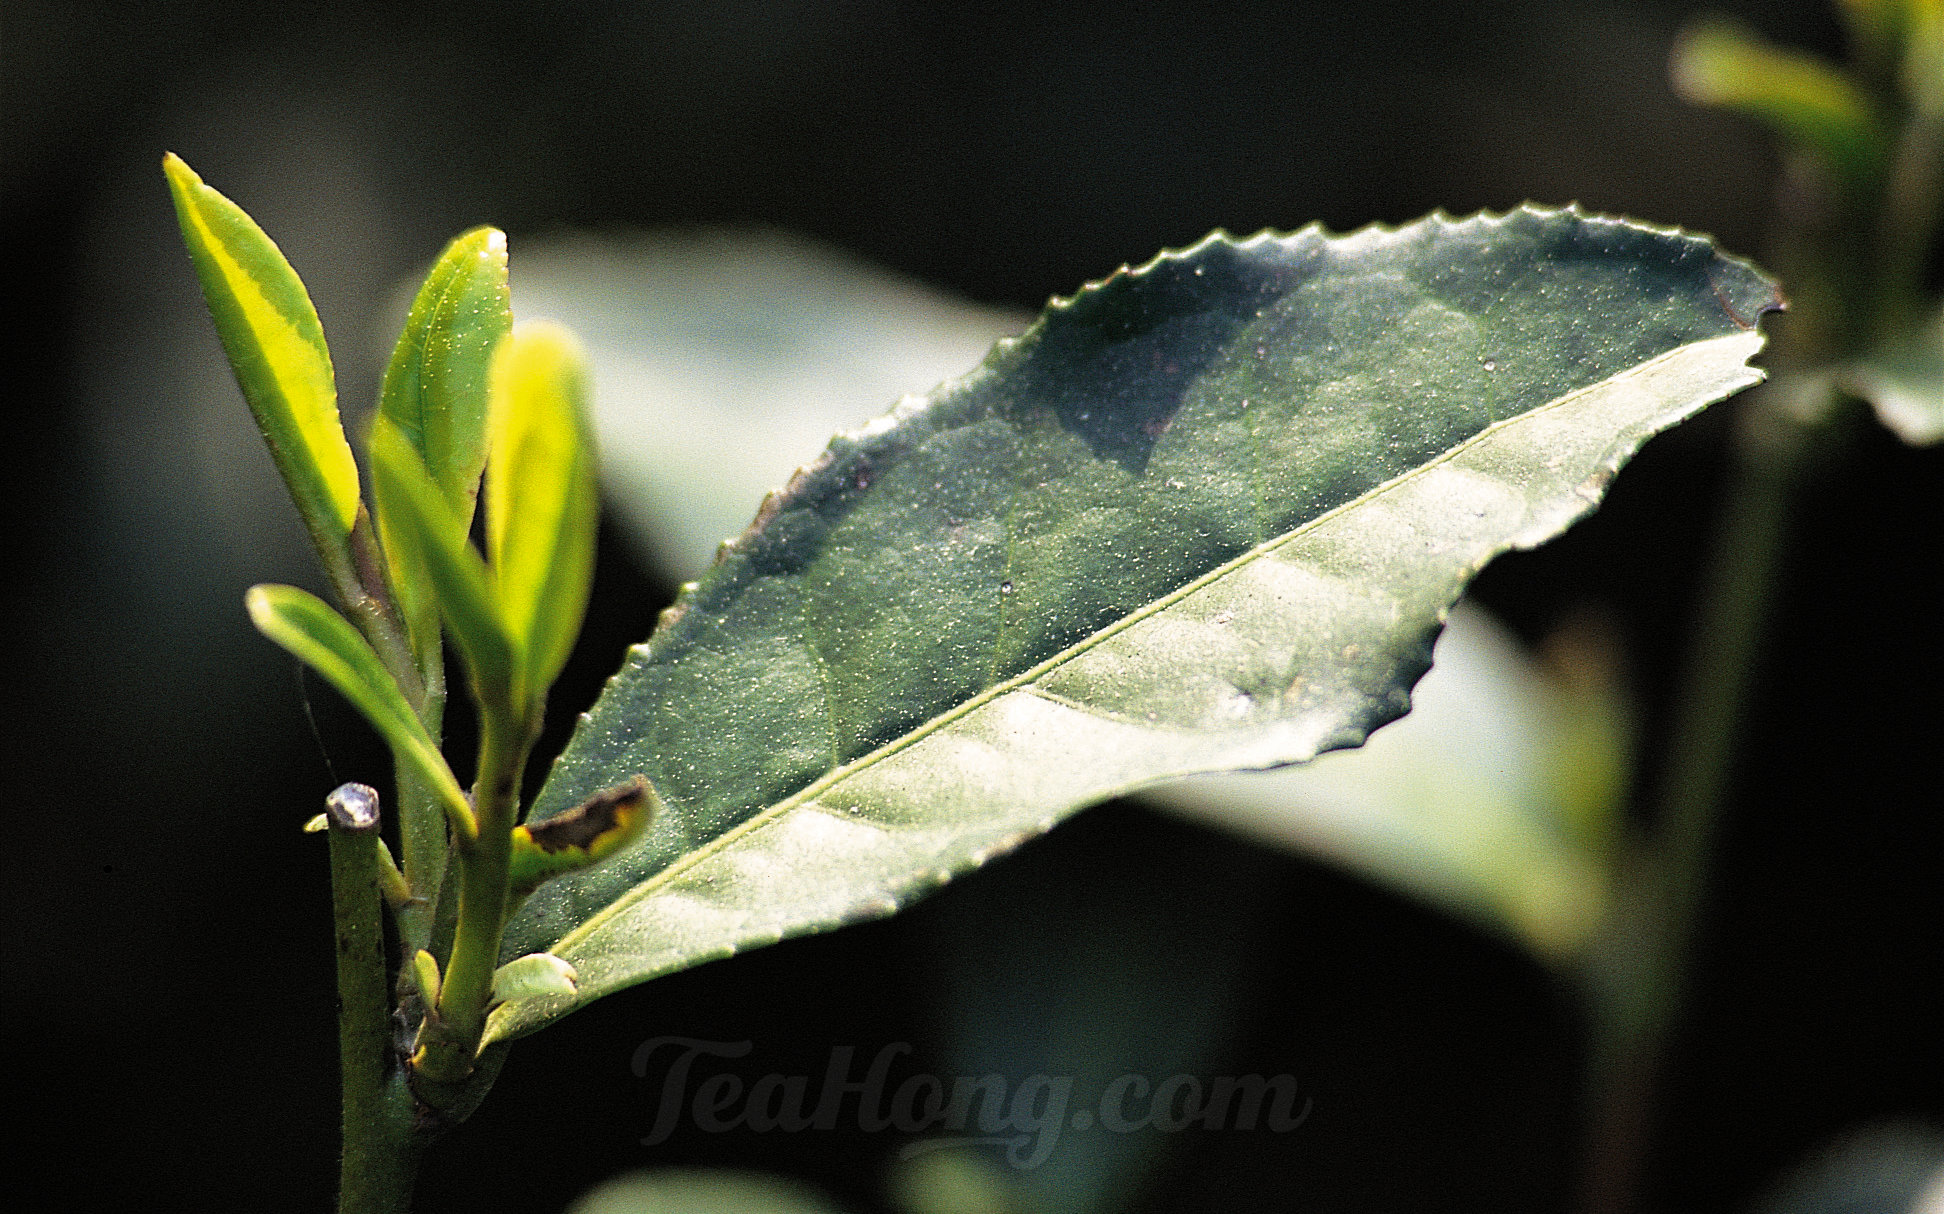 The buds of a Tu-zhong Longjing